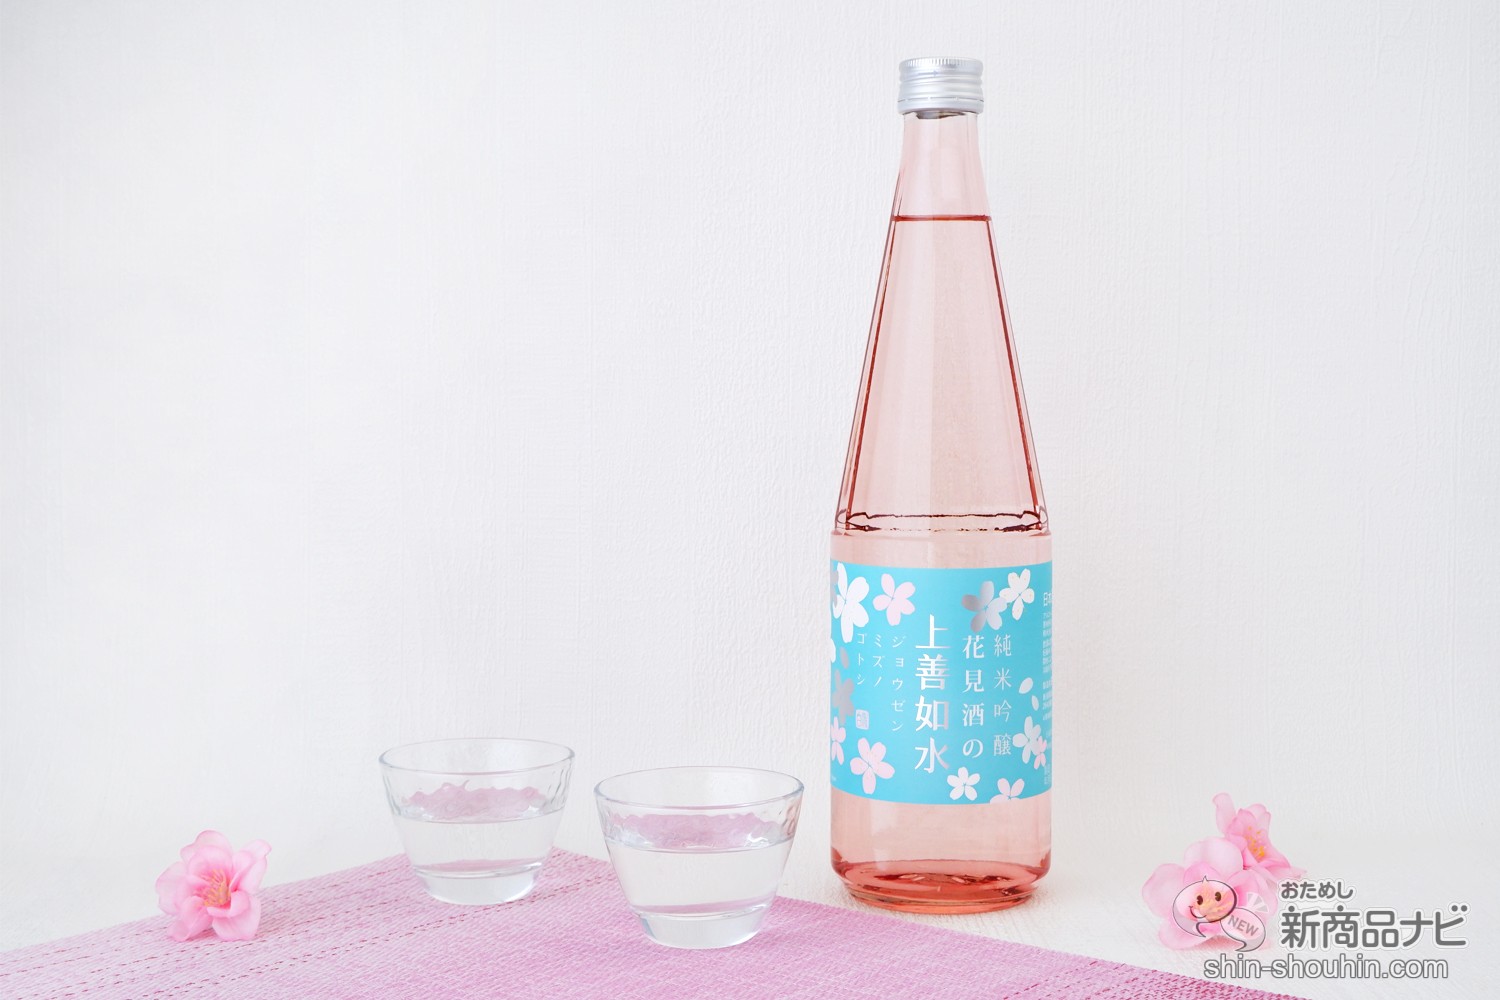 おためし新商品ナビ » Blog Archive » 桜とともに楽しみたい日本酒